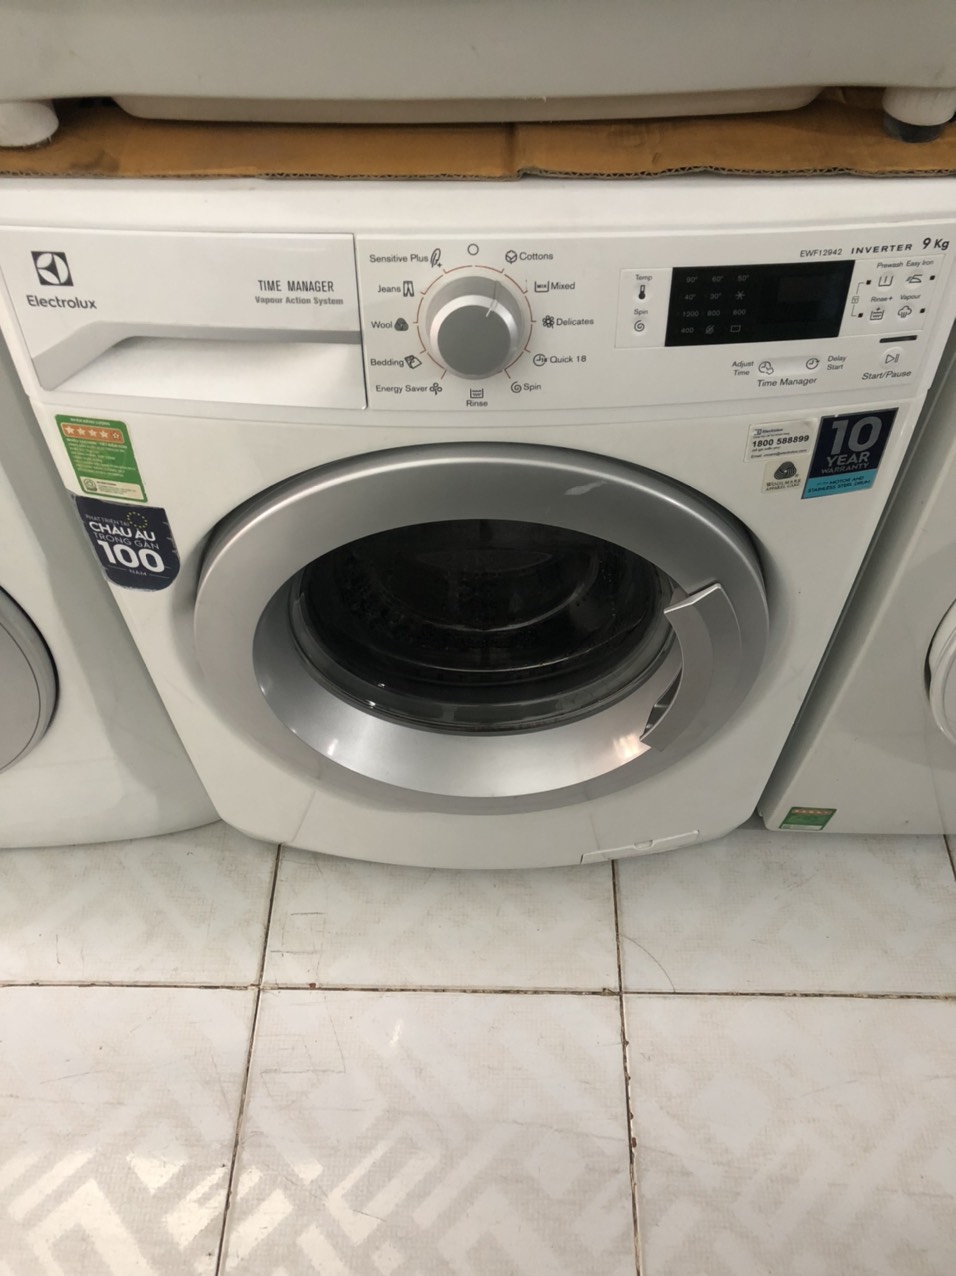 Thợ Sửa Máy Giặt quận Bình Thạnh TPHCM - Hầu hết các hộ gia đình thường không quan tâm đến vấn đề vệ sinh máy giặt.